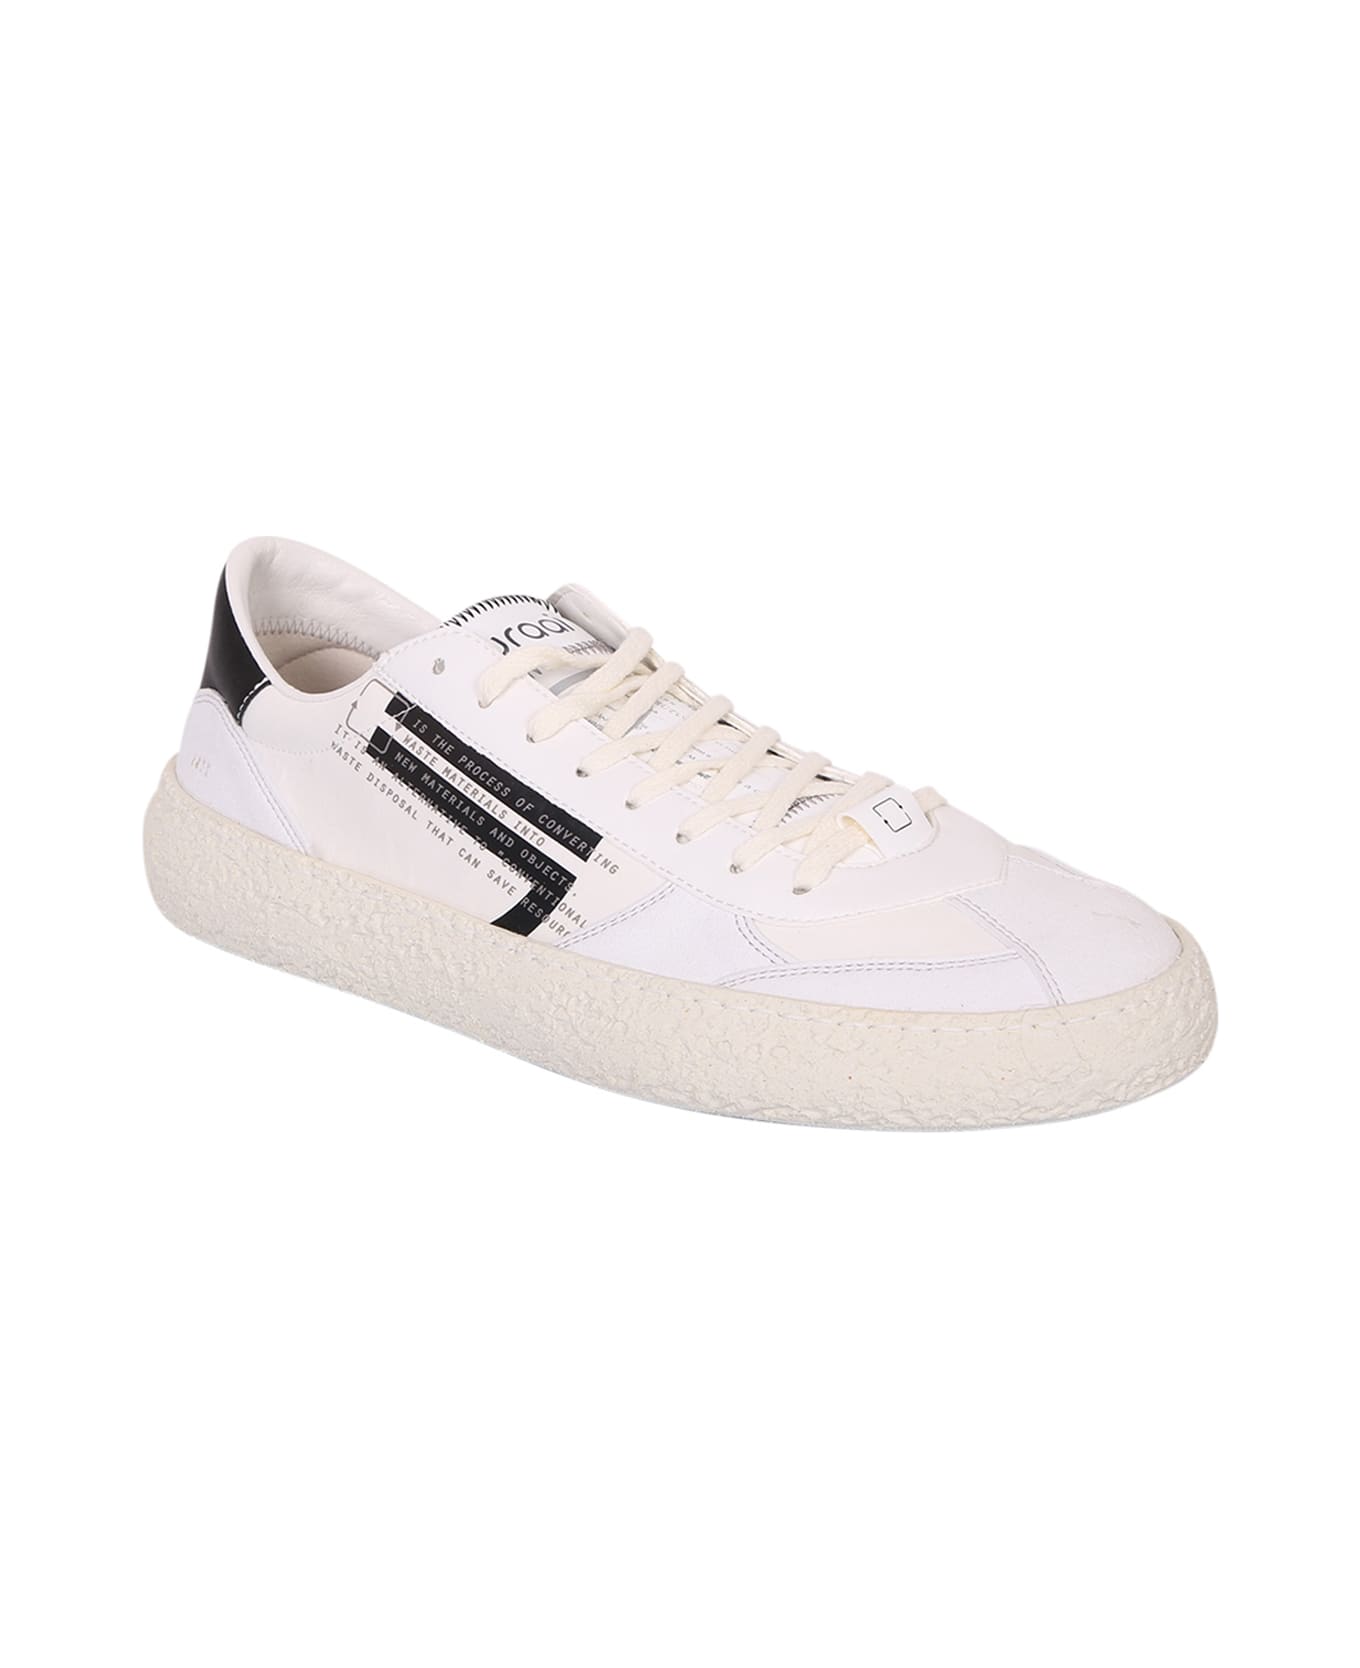 Puraai Mora Low-top Sneakers - White